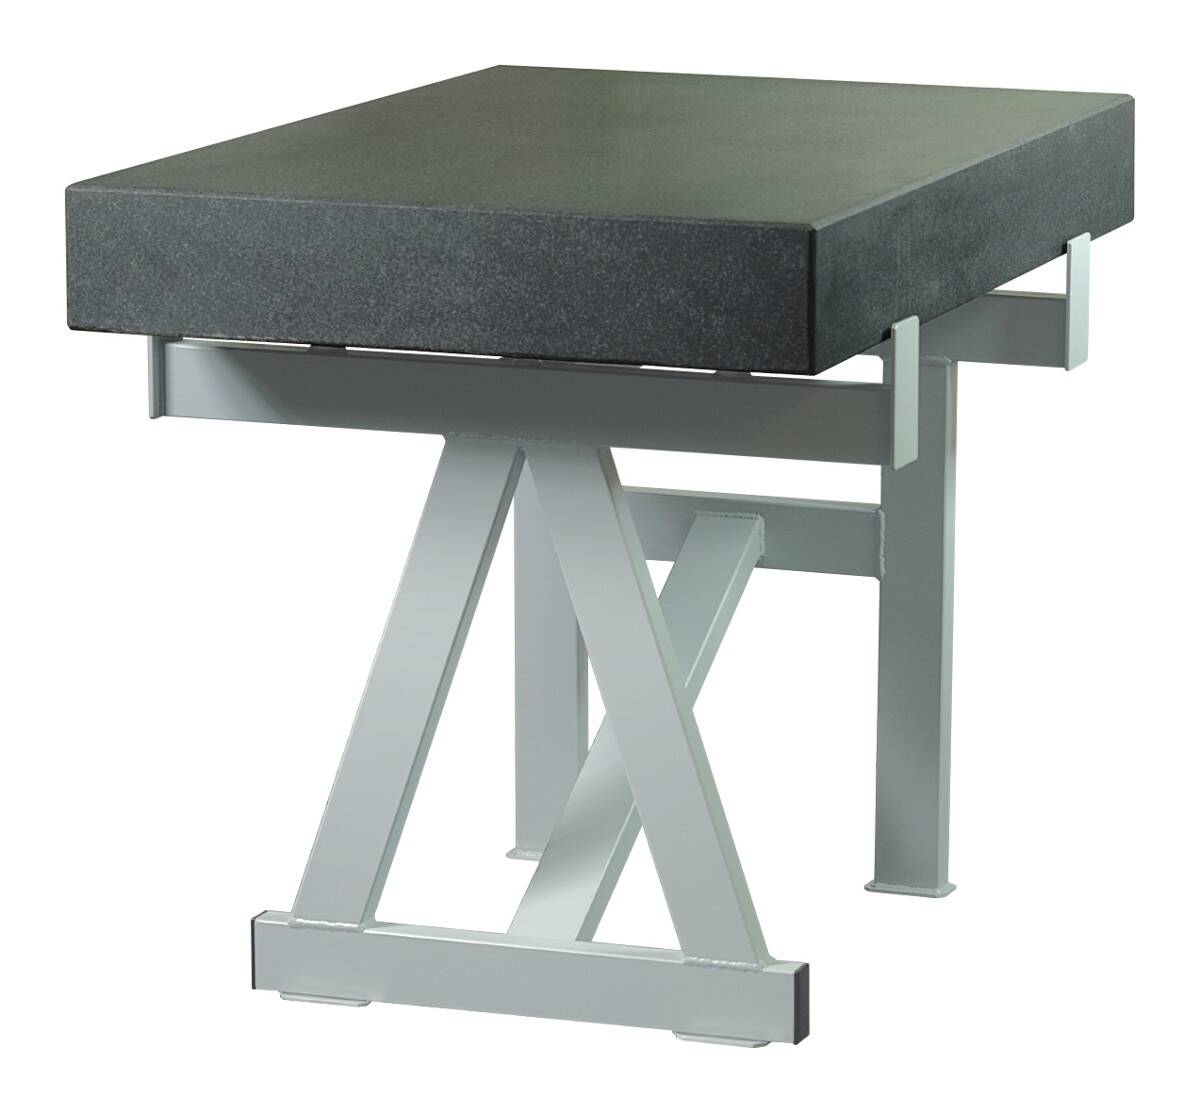 SCHUT stół do płyty pomiarowej żeliwnej 1000x600mm 131.030